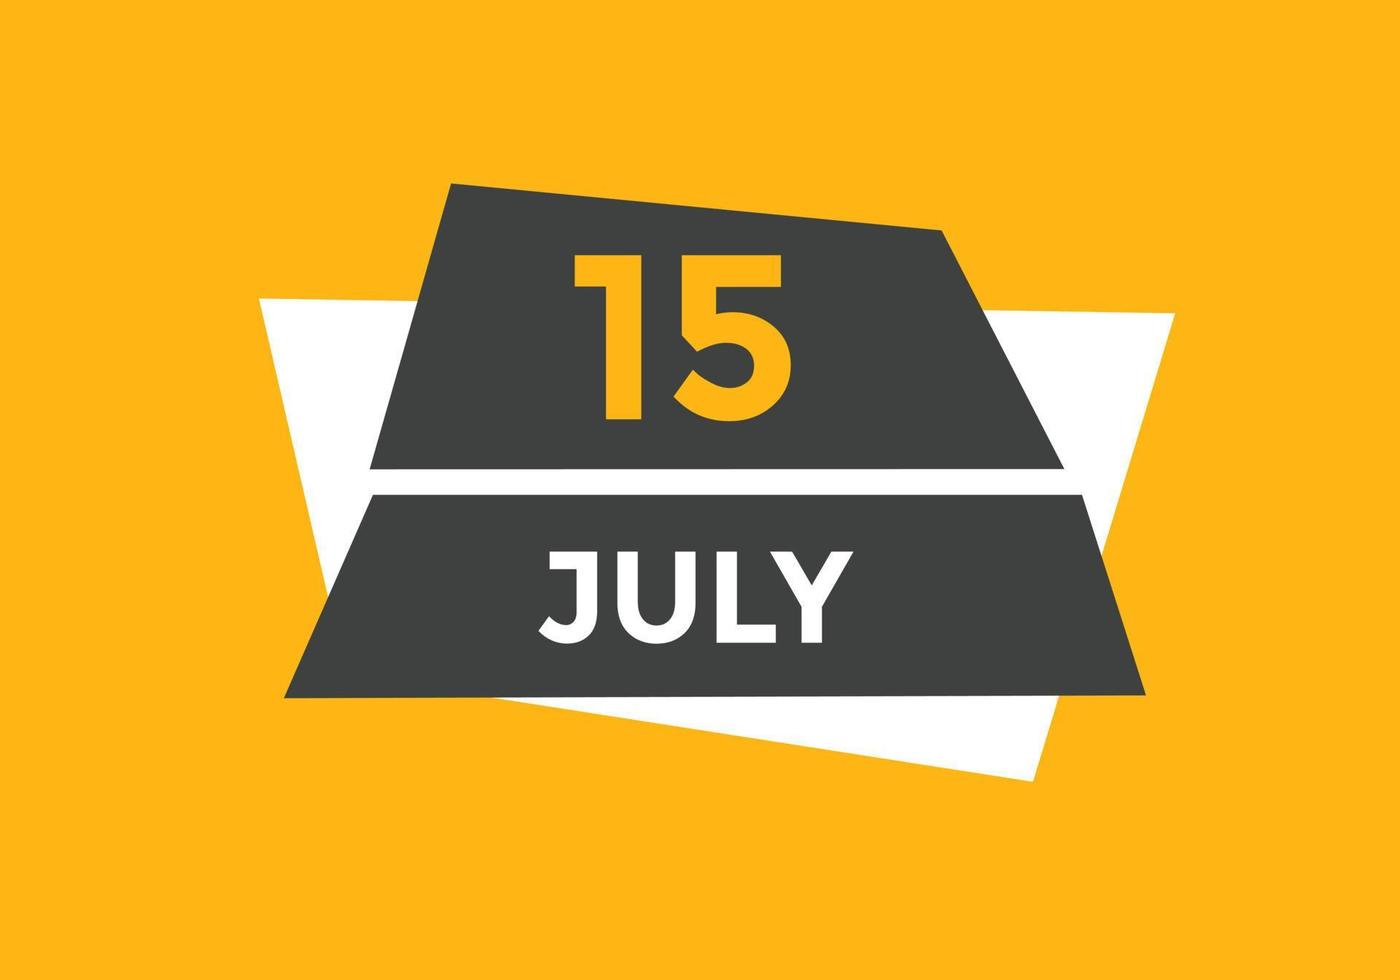 rappel du calendrier du 15 juillet. Modèle d'icône de calendrier quotidien du 15 juillet. modèle de conception d'icône calendrier 15 juillet. illustration vectorielle vecteur